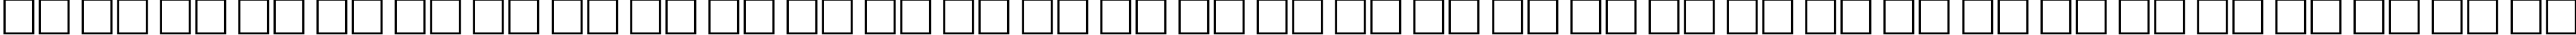 Пример написания русского алфавита шрифтом MatterhornCTT